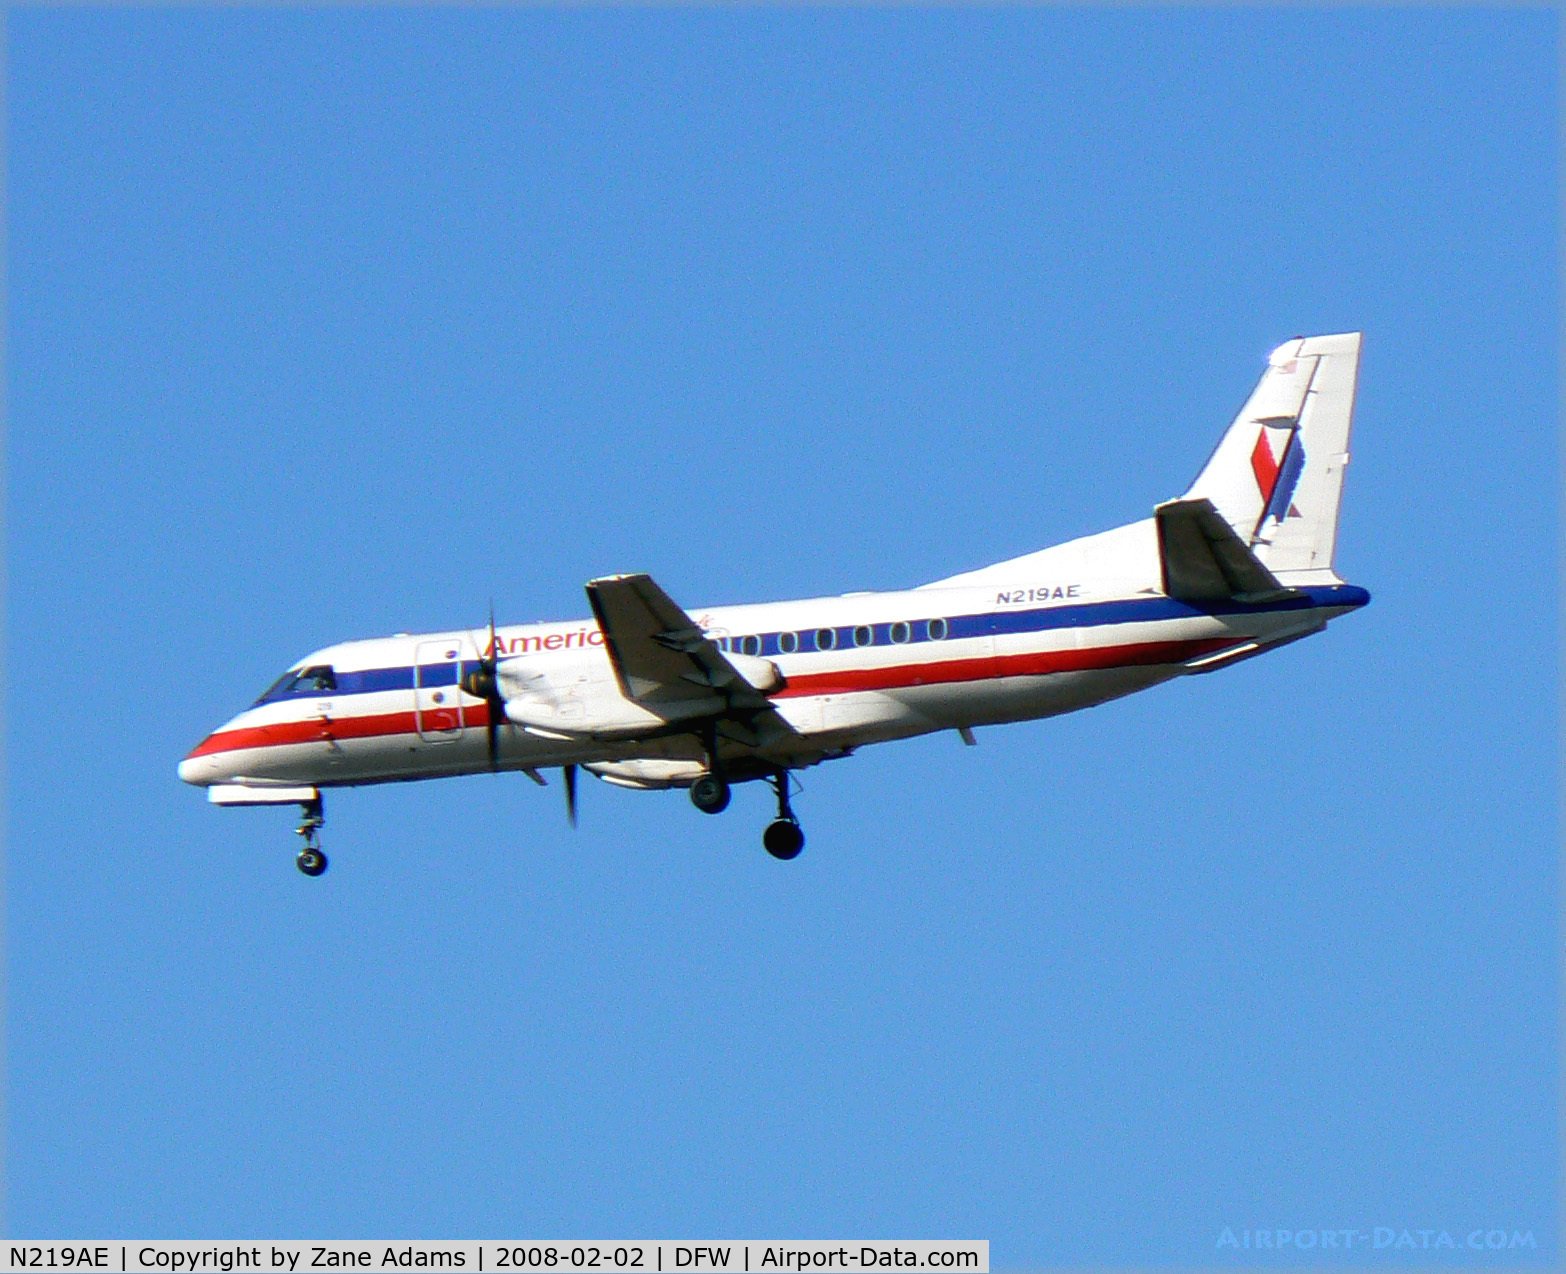 N219AE, 1990 Saab 340B C/N 340B-219, American Eagle at DFW